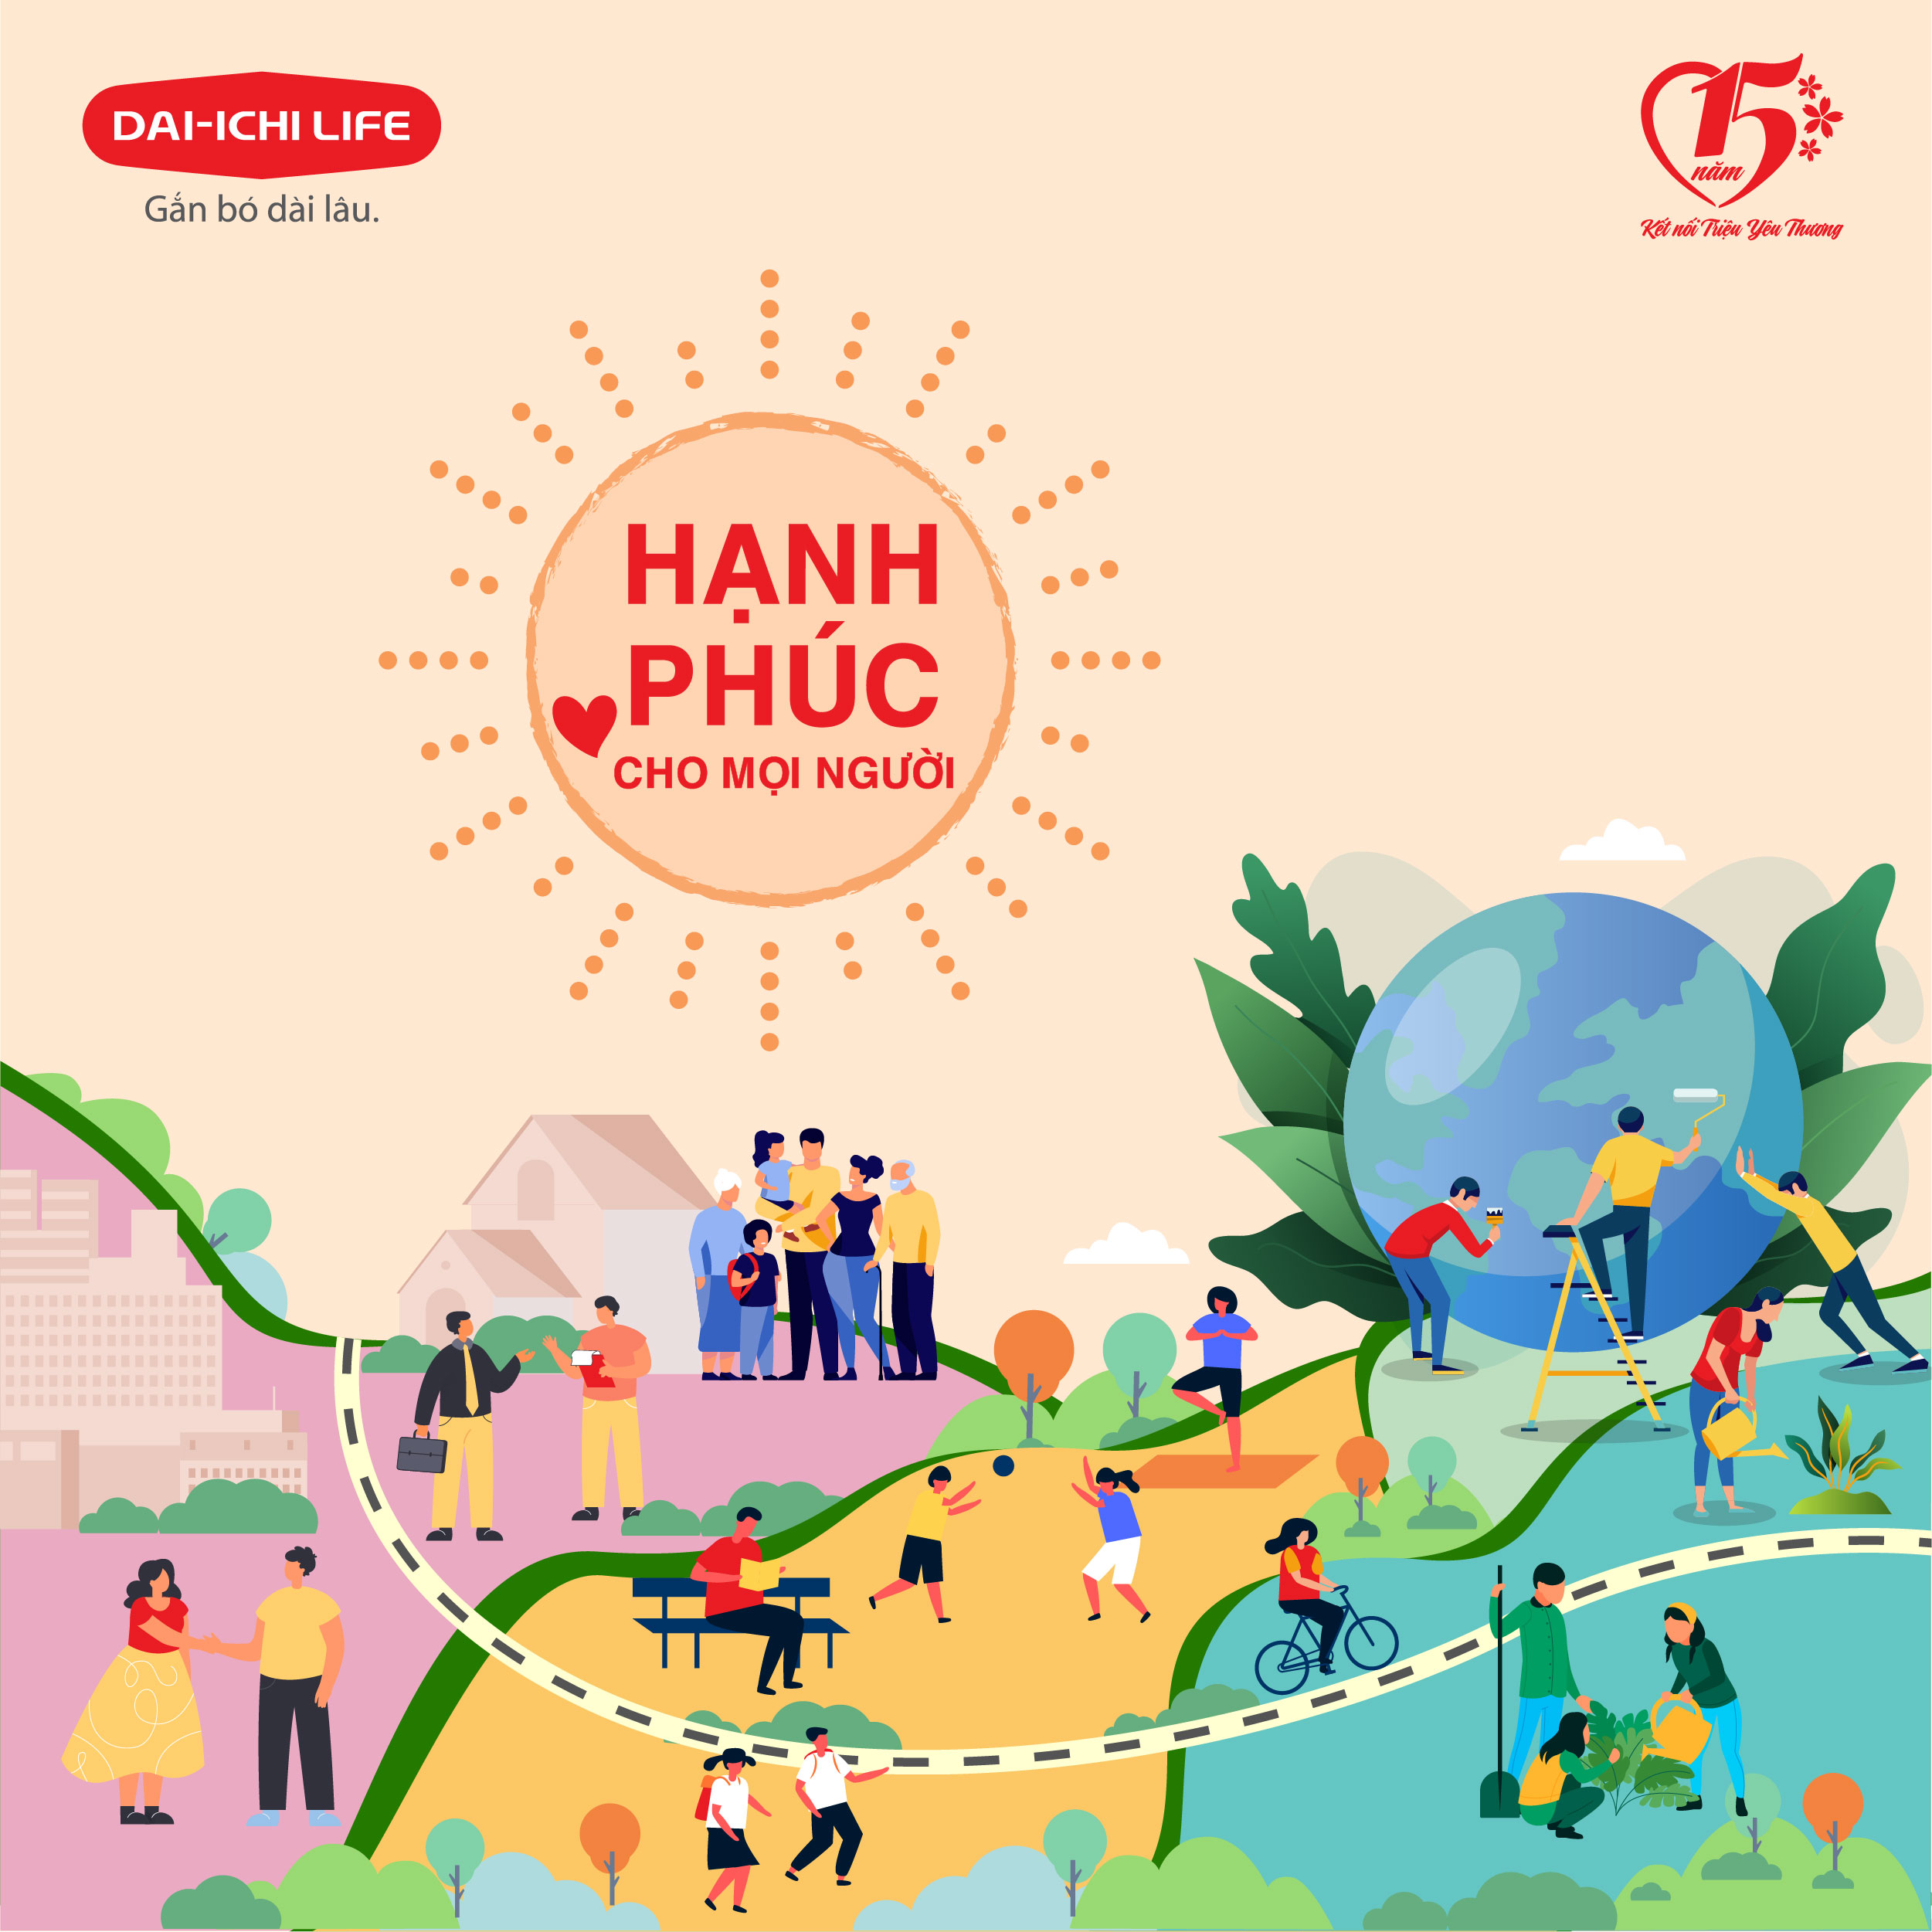 Dai-ichi Life Việt Nam ra mắt dự án Kết nối triệu yêu thương - Hạnh phúc cho mọi người - Ảnh 1.